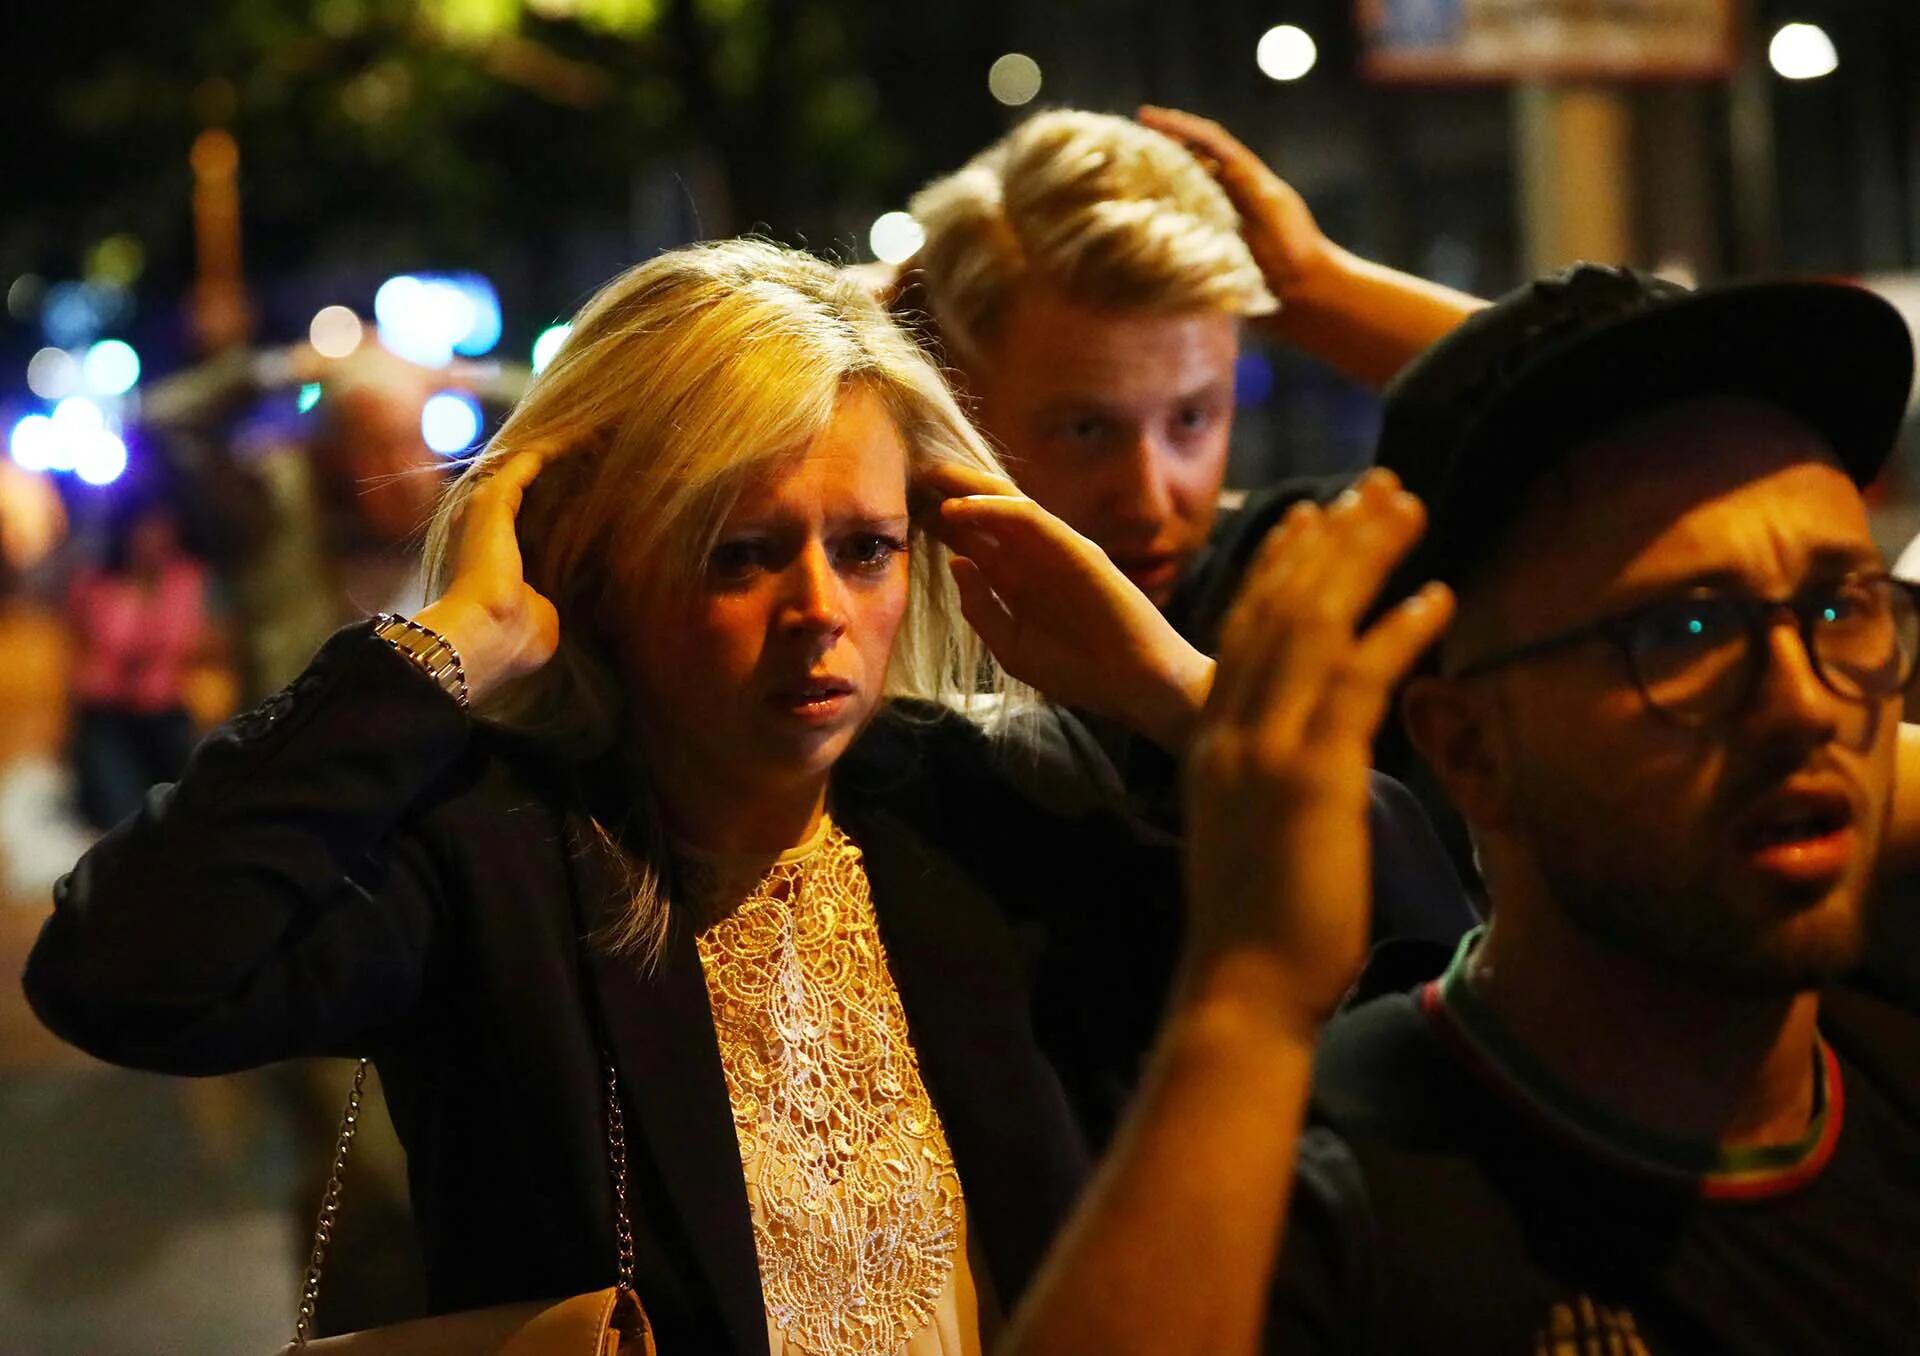 La gente abandona el lugar con las manos en la cabeza REUTERS/Neil Hall